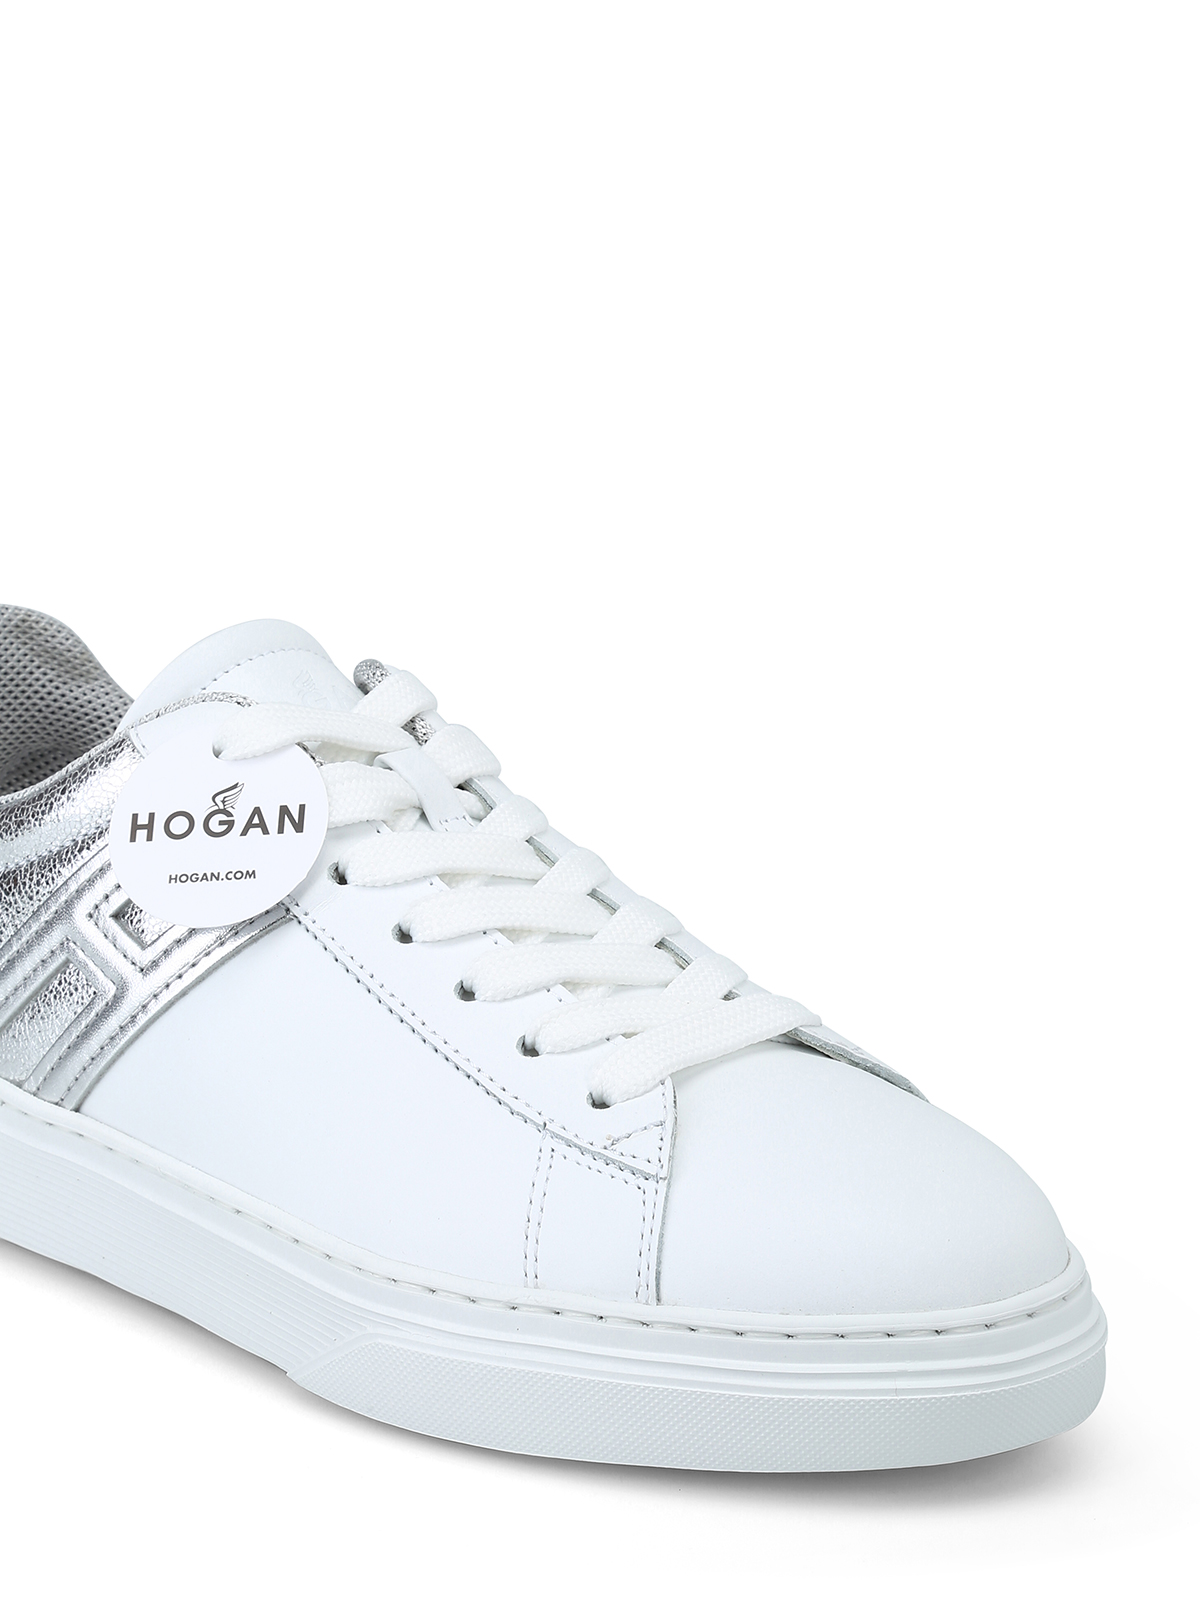 hogan h365 white